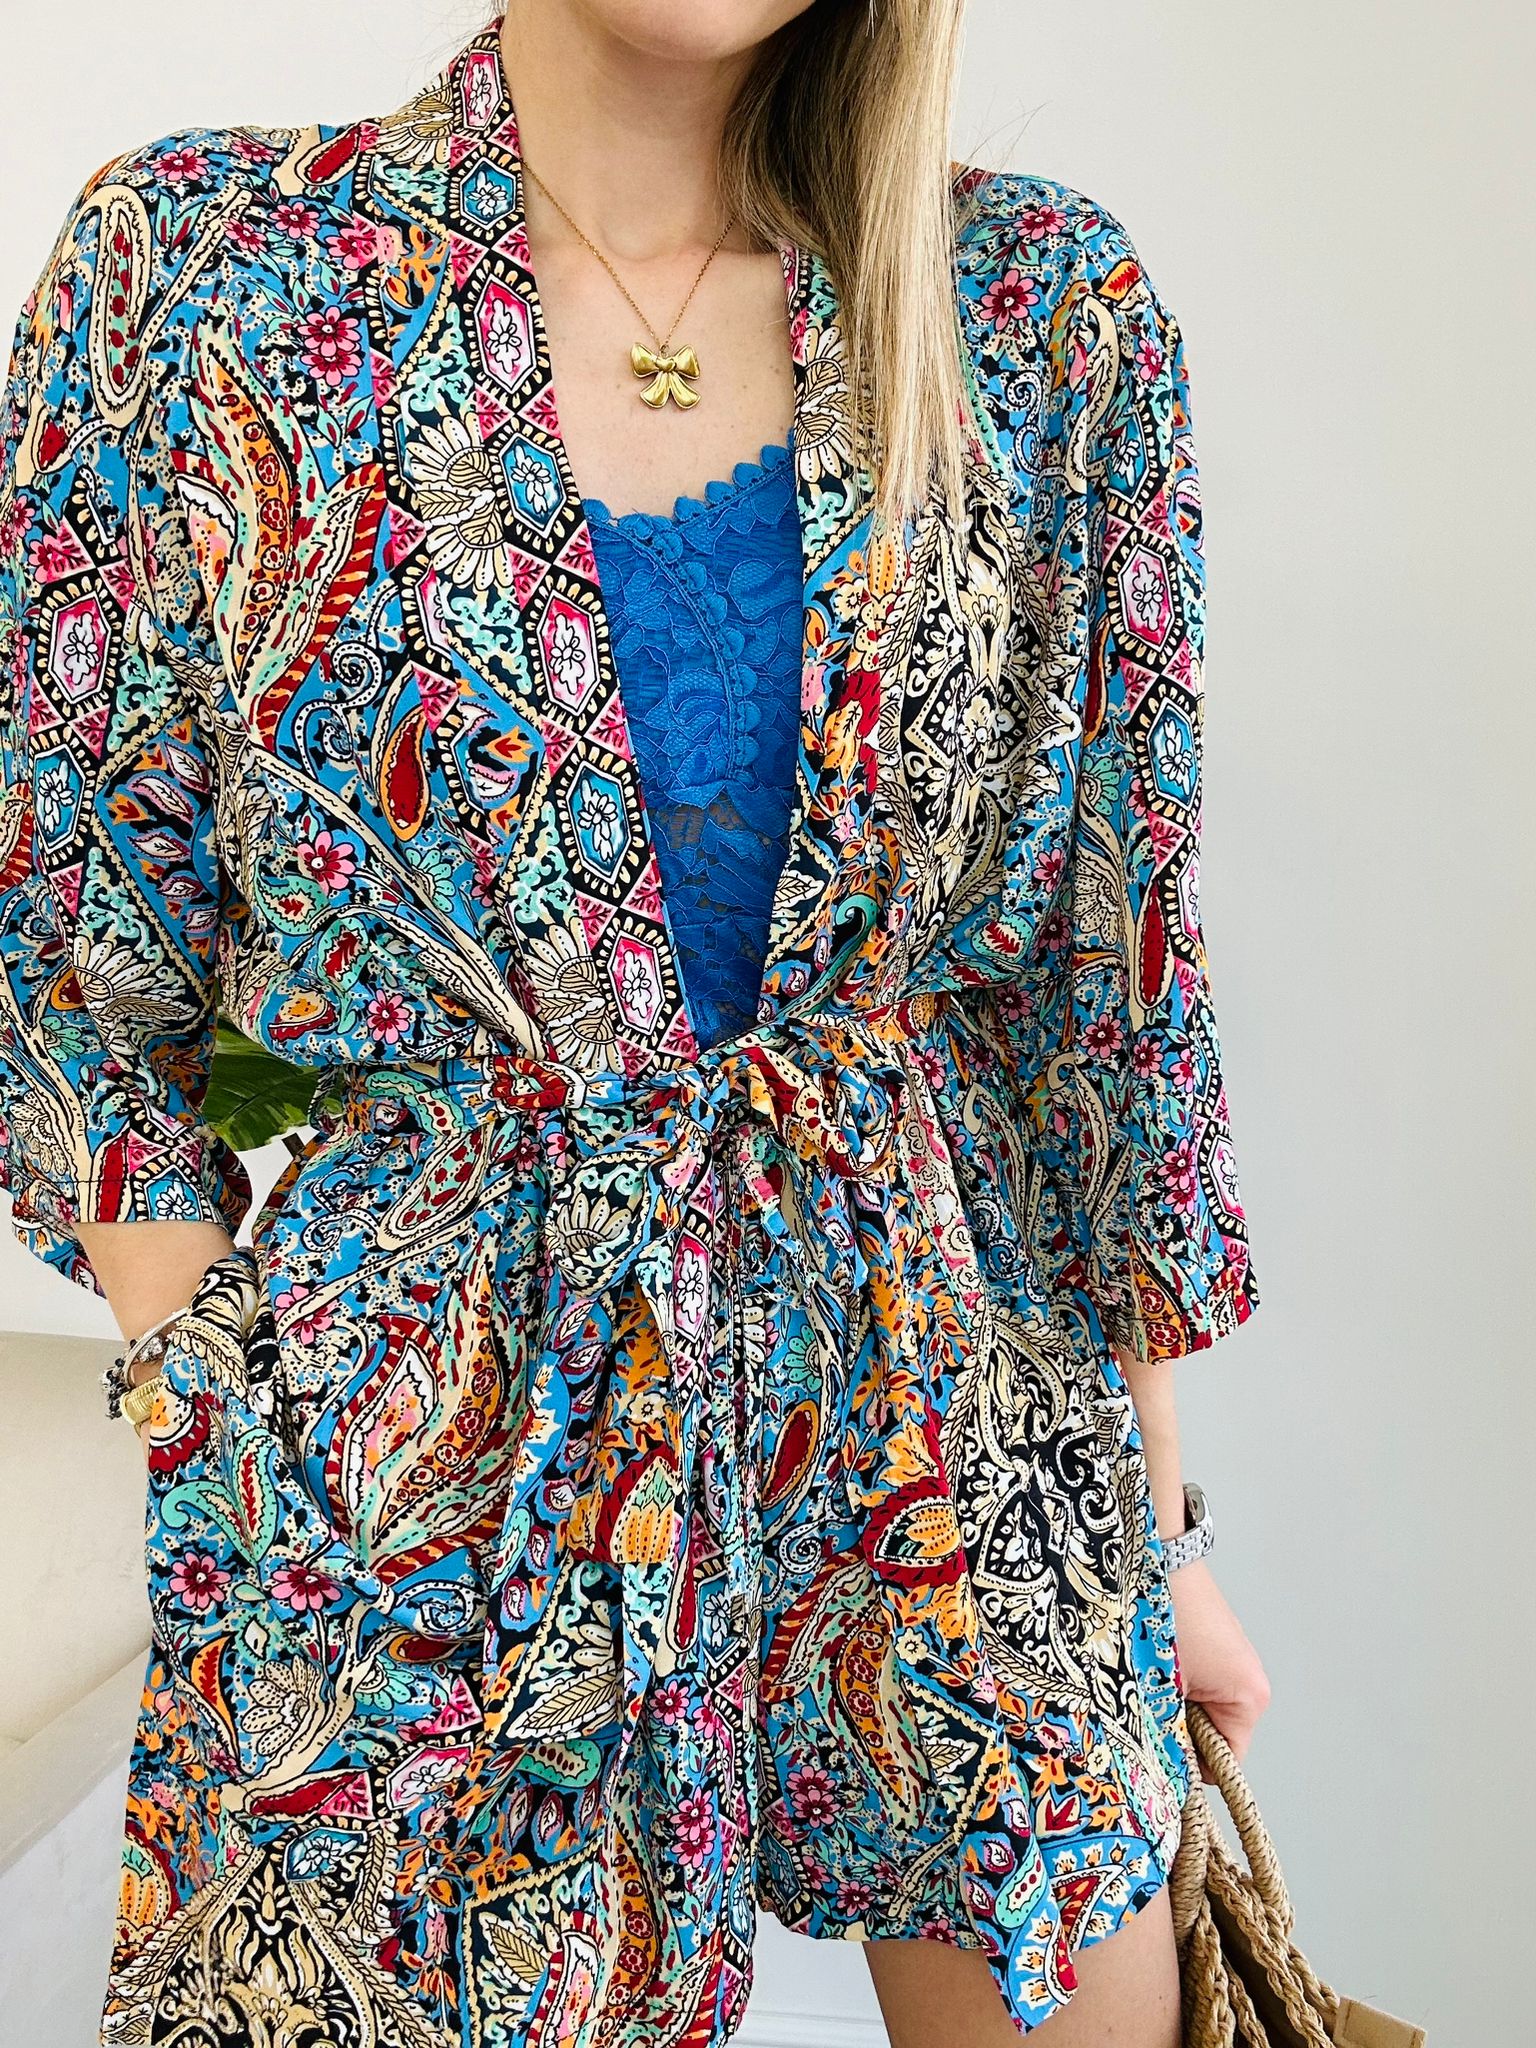 Coordinato Nerano (Camicia Kimono + Pantaloncino) Multicolor